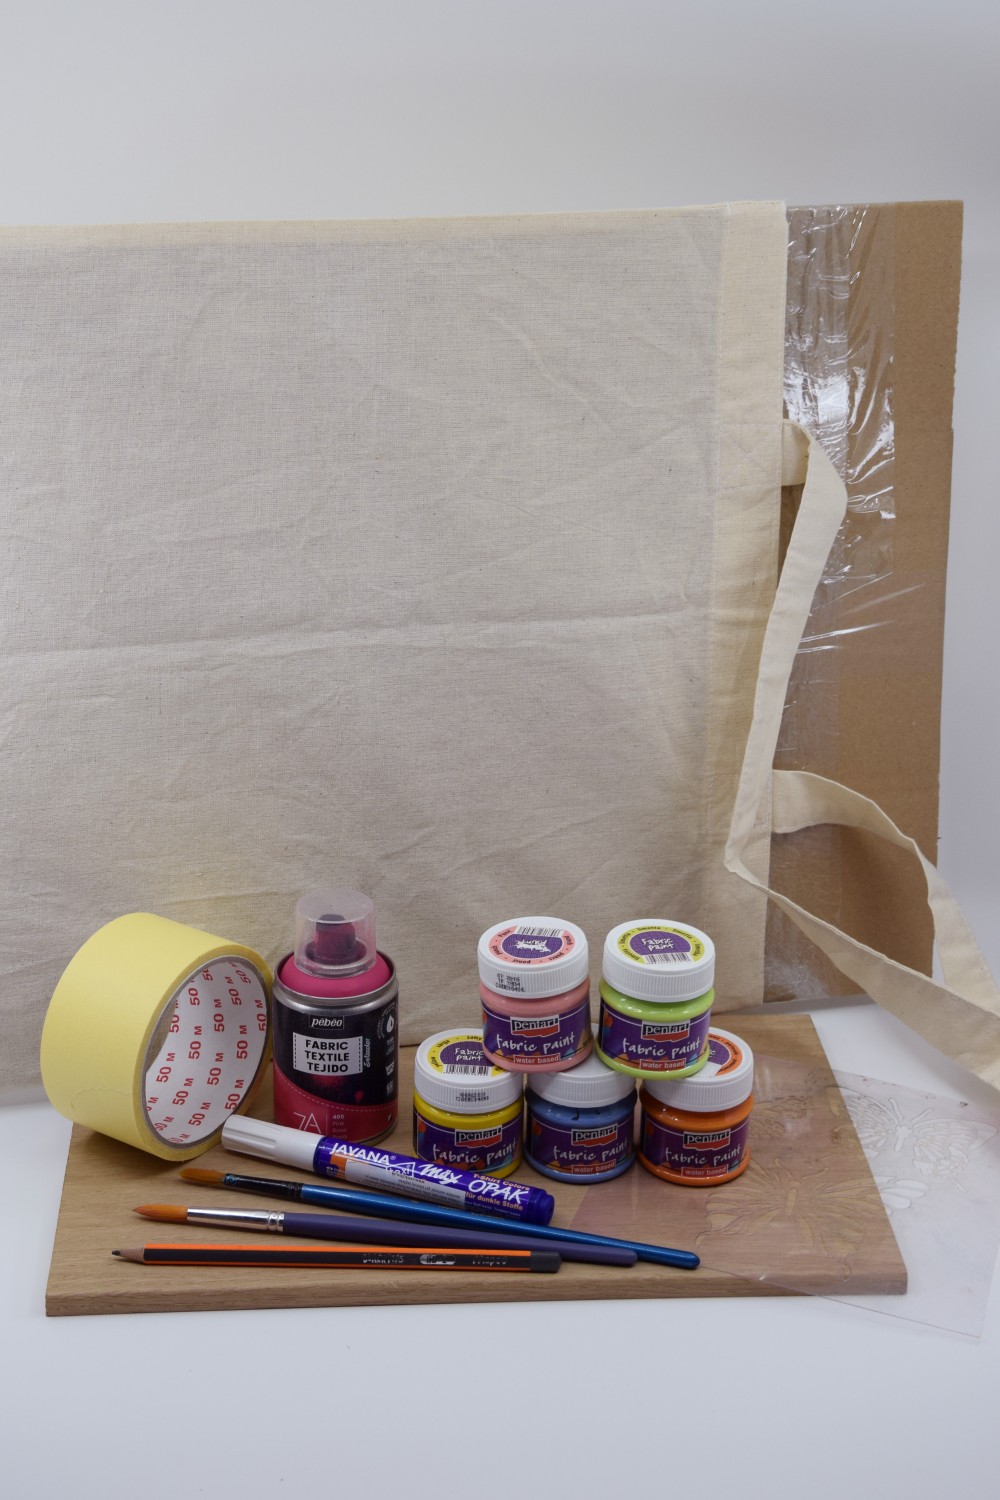 Na obrázku sú farby na textil, s fixkami, štetcami a ceruzkou postavené pred plátennou taškou s kartónom vo vnútri.